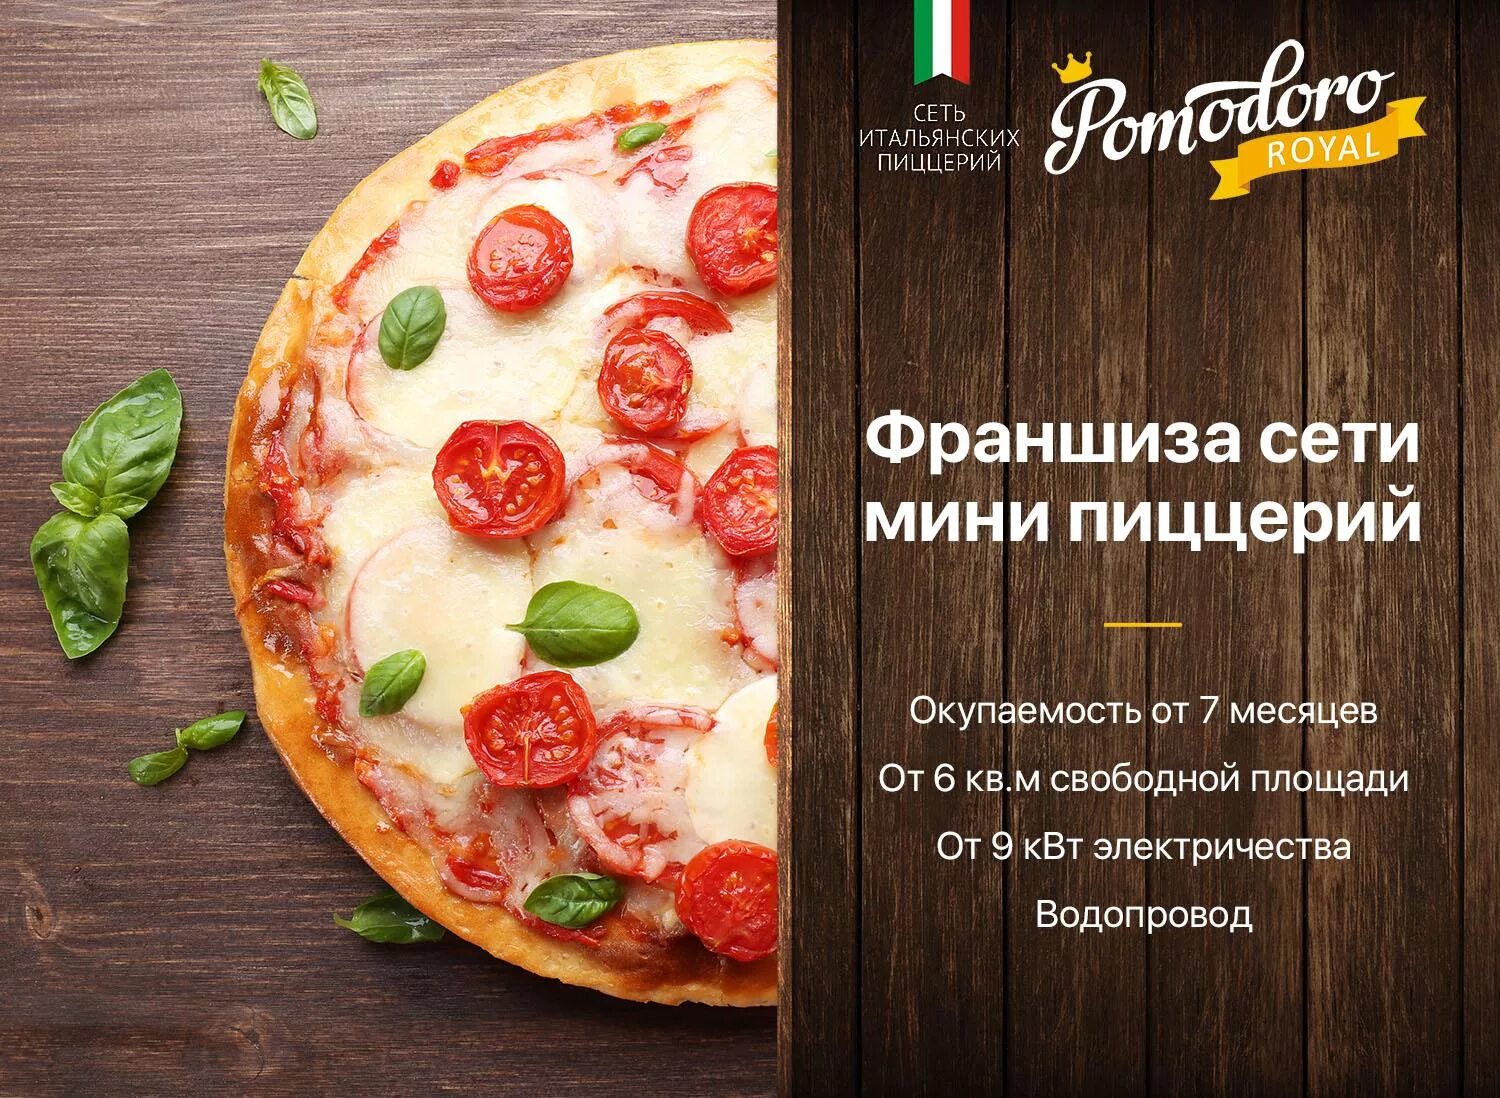 Пиццерия слово. Реклама пиццерии. Реклама пиццы. Слоган для пиццерии. Макет для рекламы пиццерии.